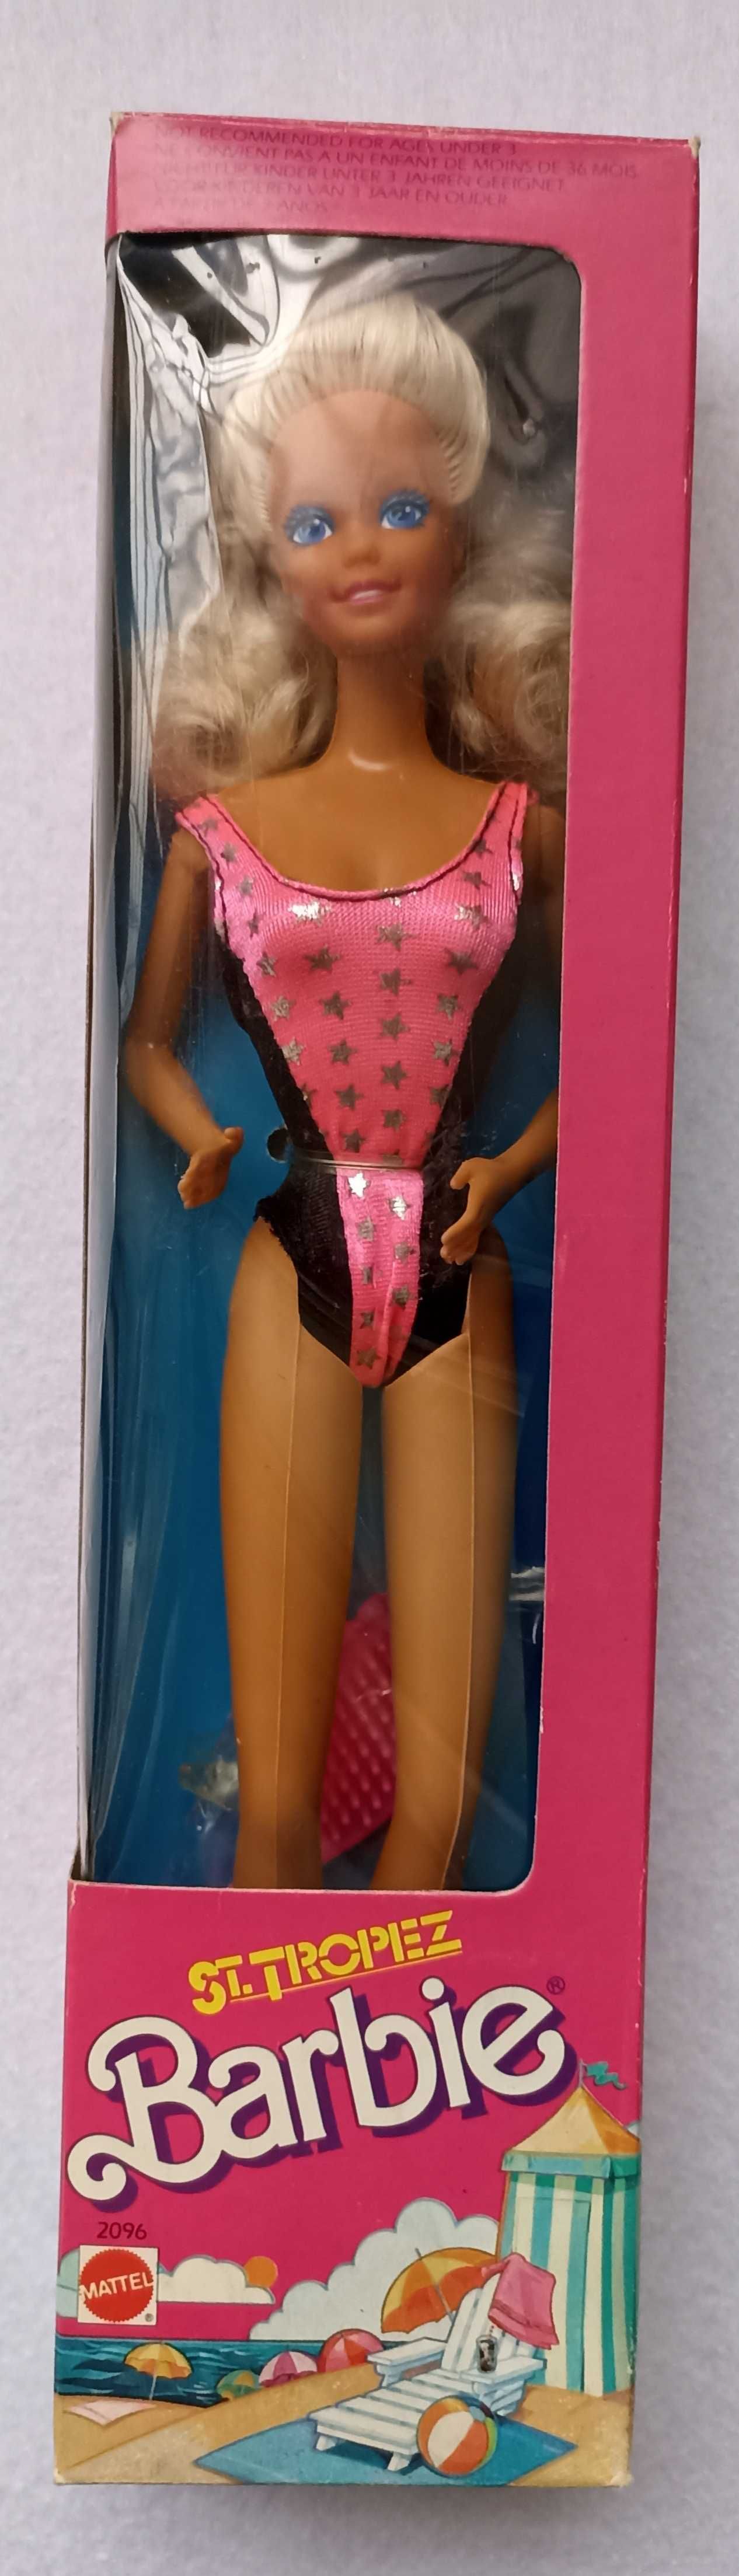 Barbie ST. Tropez 1989 Congost